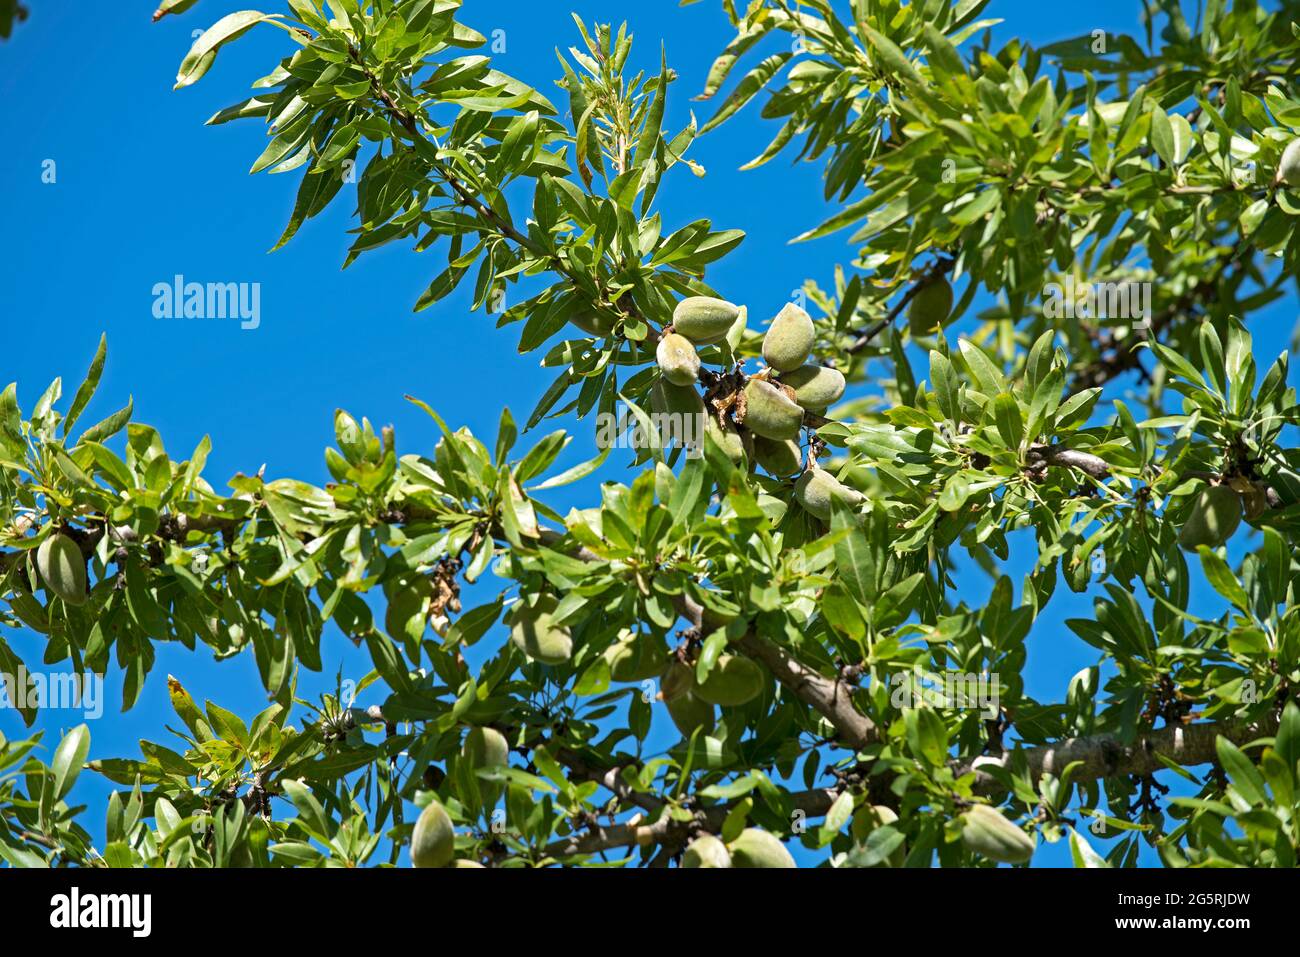 France, Alpes de Haute Provence (04), plateau de Valensole, Mandel Almond  (Prunus dulcis), Stock Photo